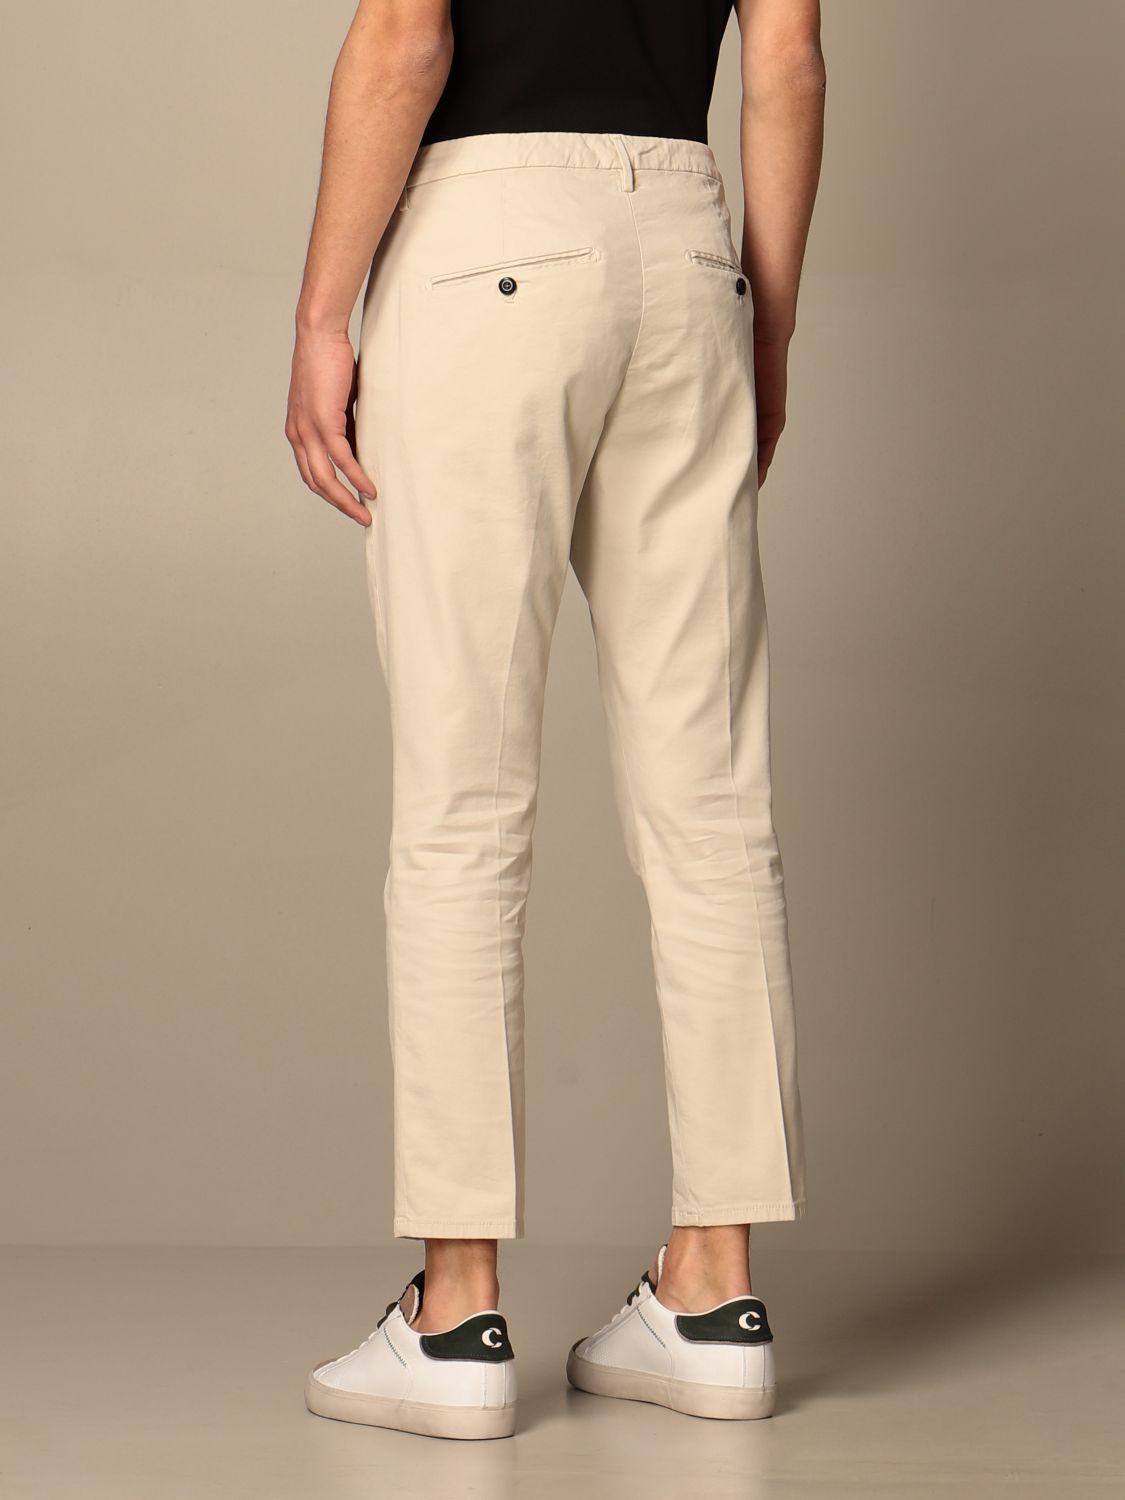 Pantalone chino in misto cotone Giglio.com Abbigliamento Pantaloni e jeans Pantaloni Pantaloni chinos 